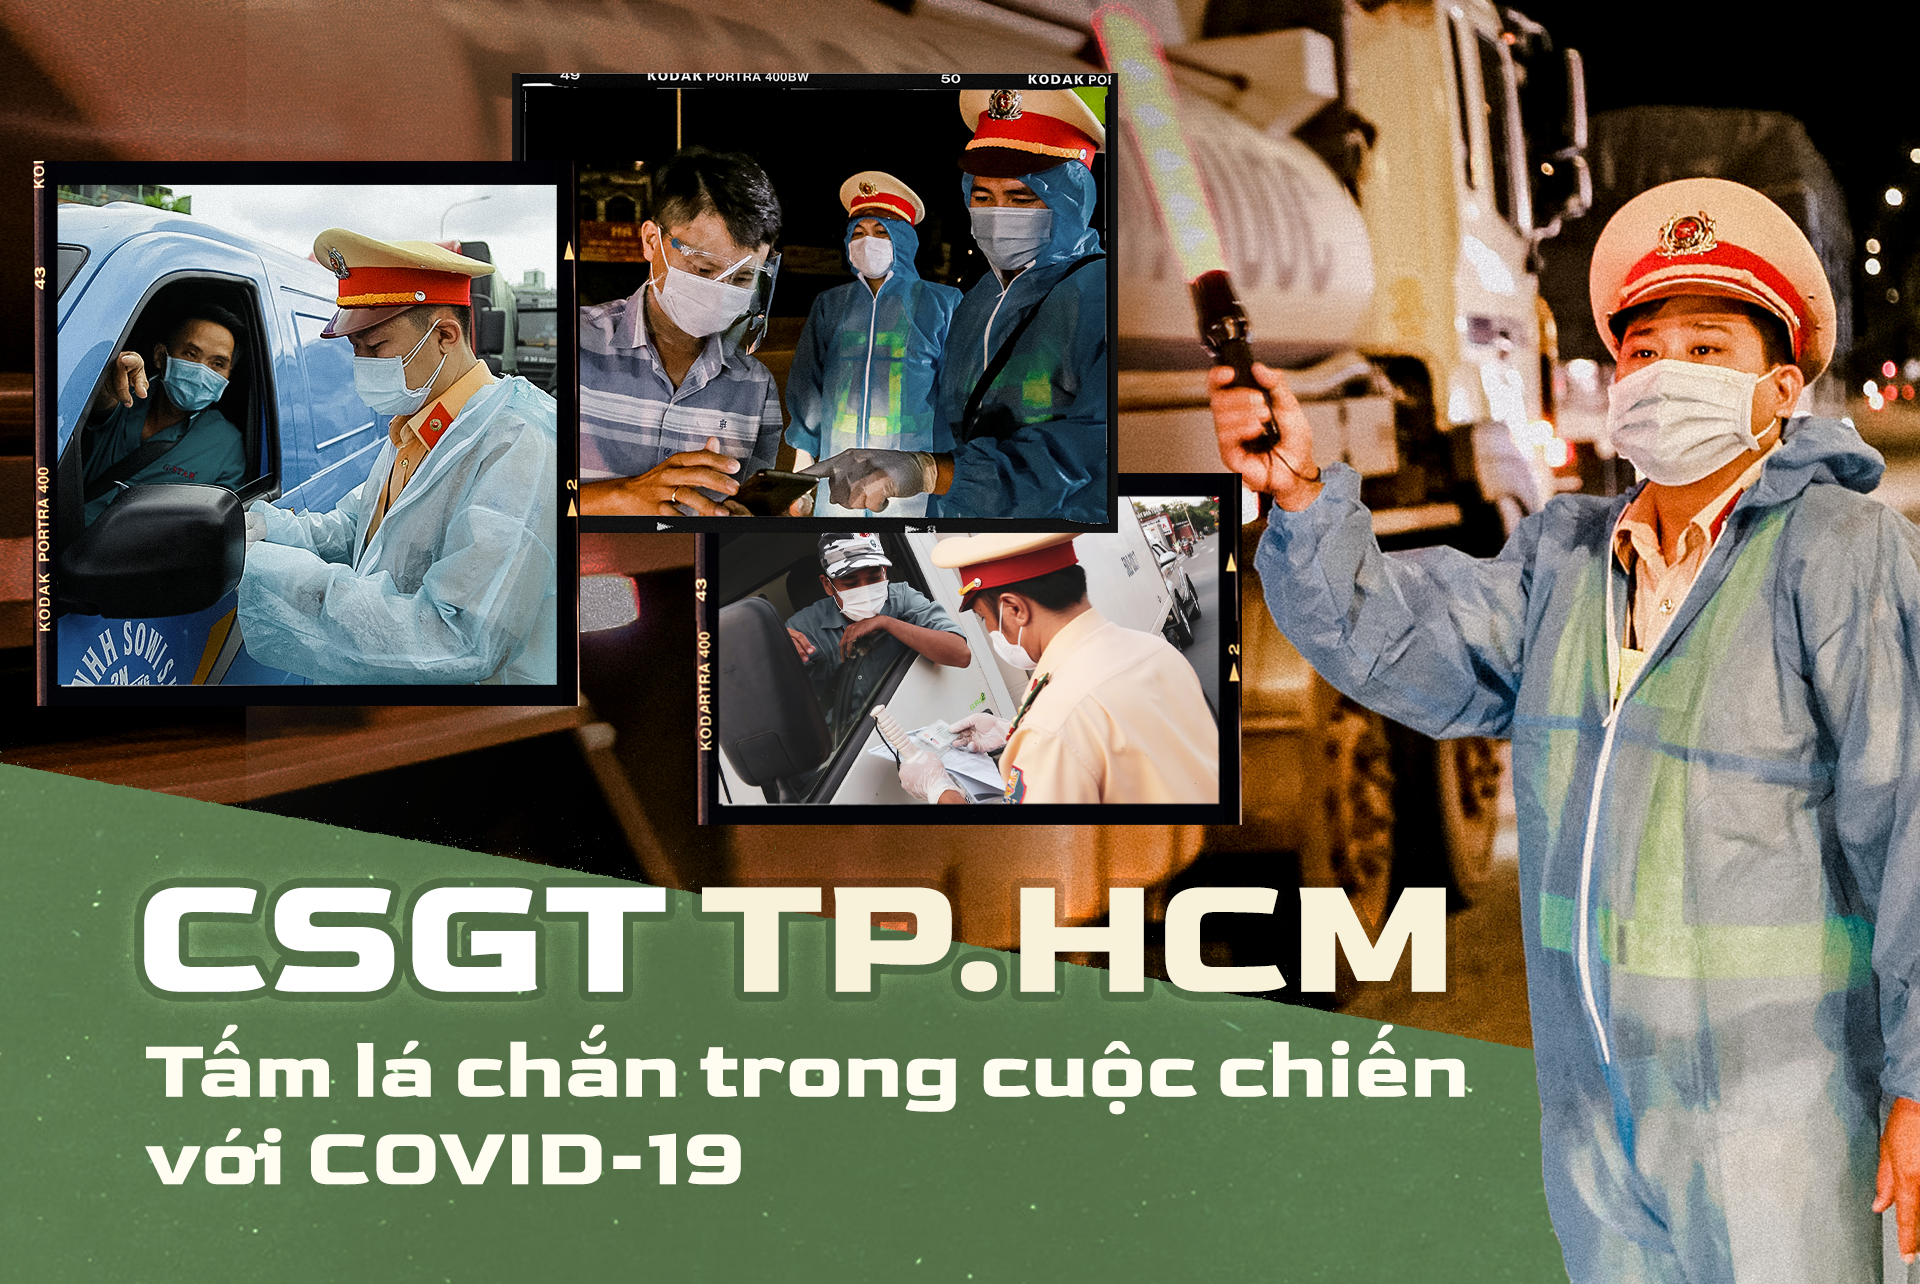 Emagazine: CSGT TP.HCM - Tấm lá chắn trong cuộc chiến với COVID-19